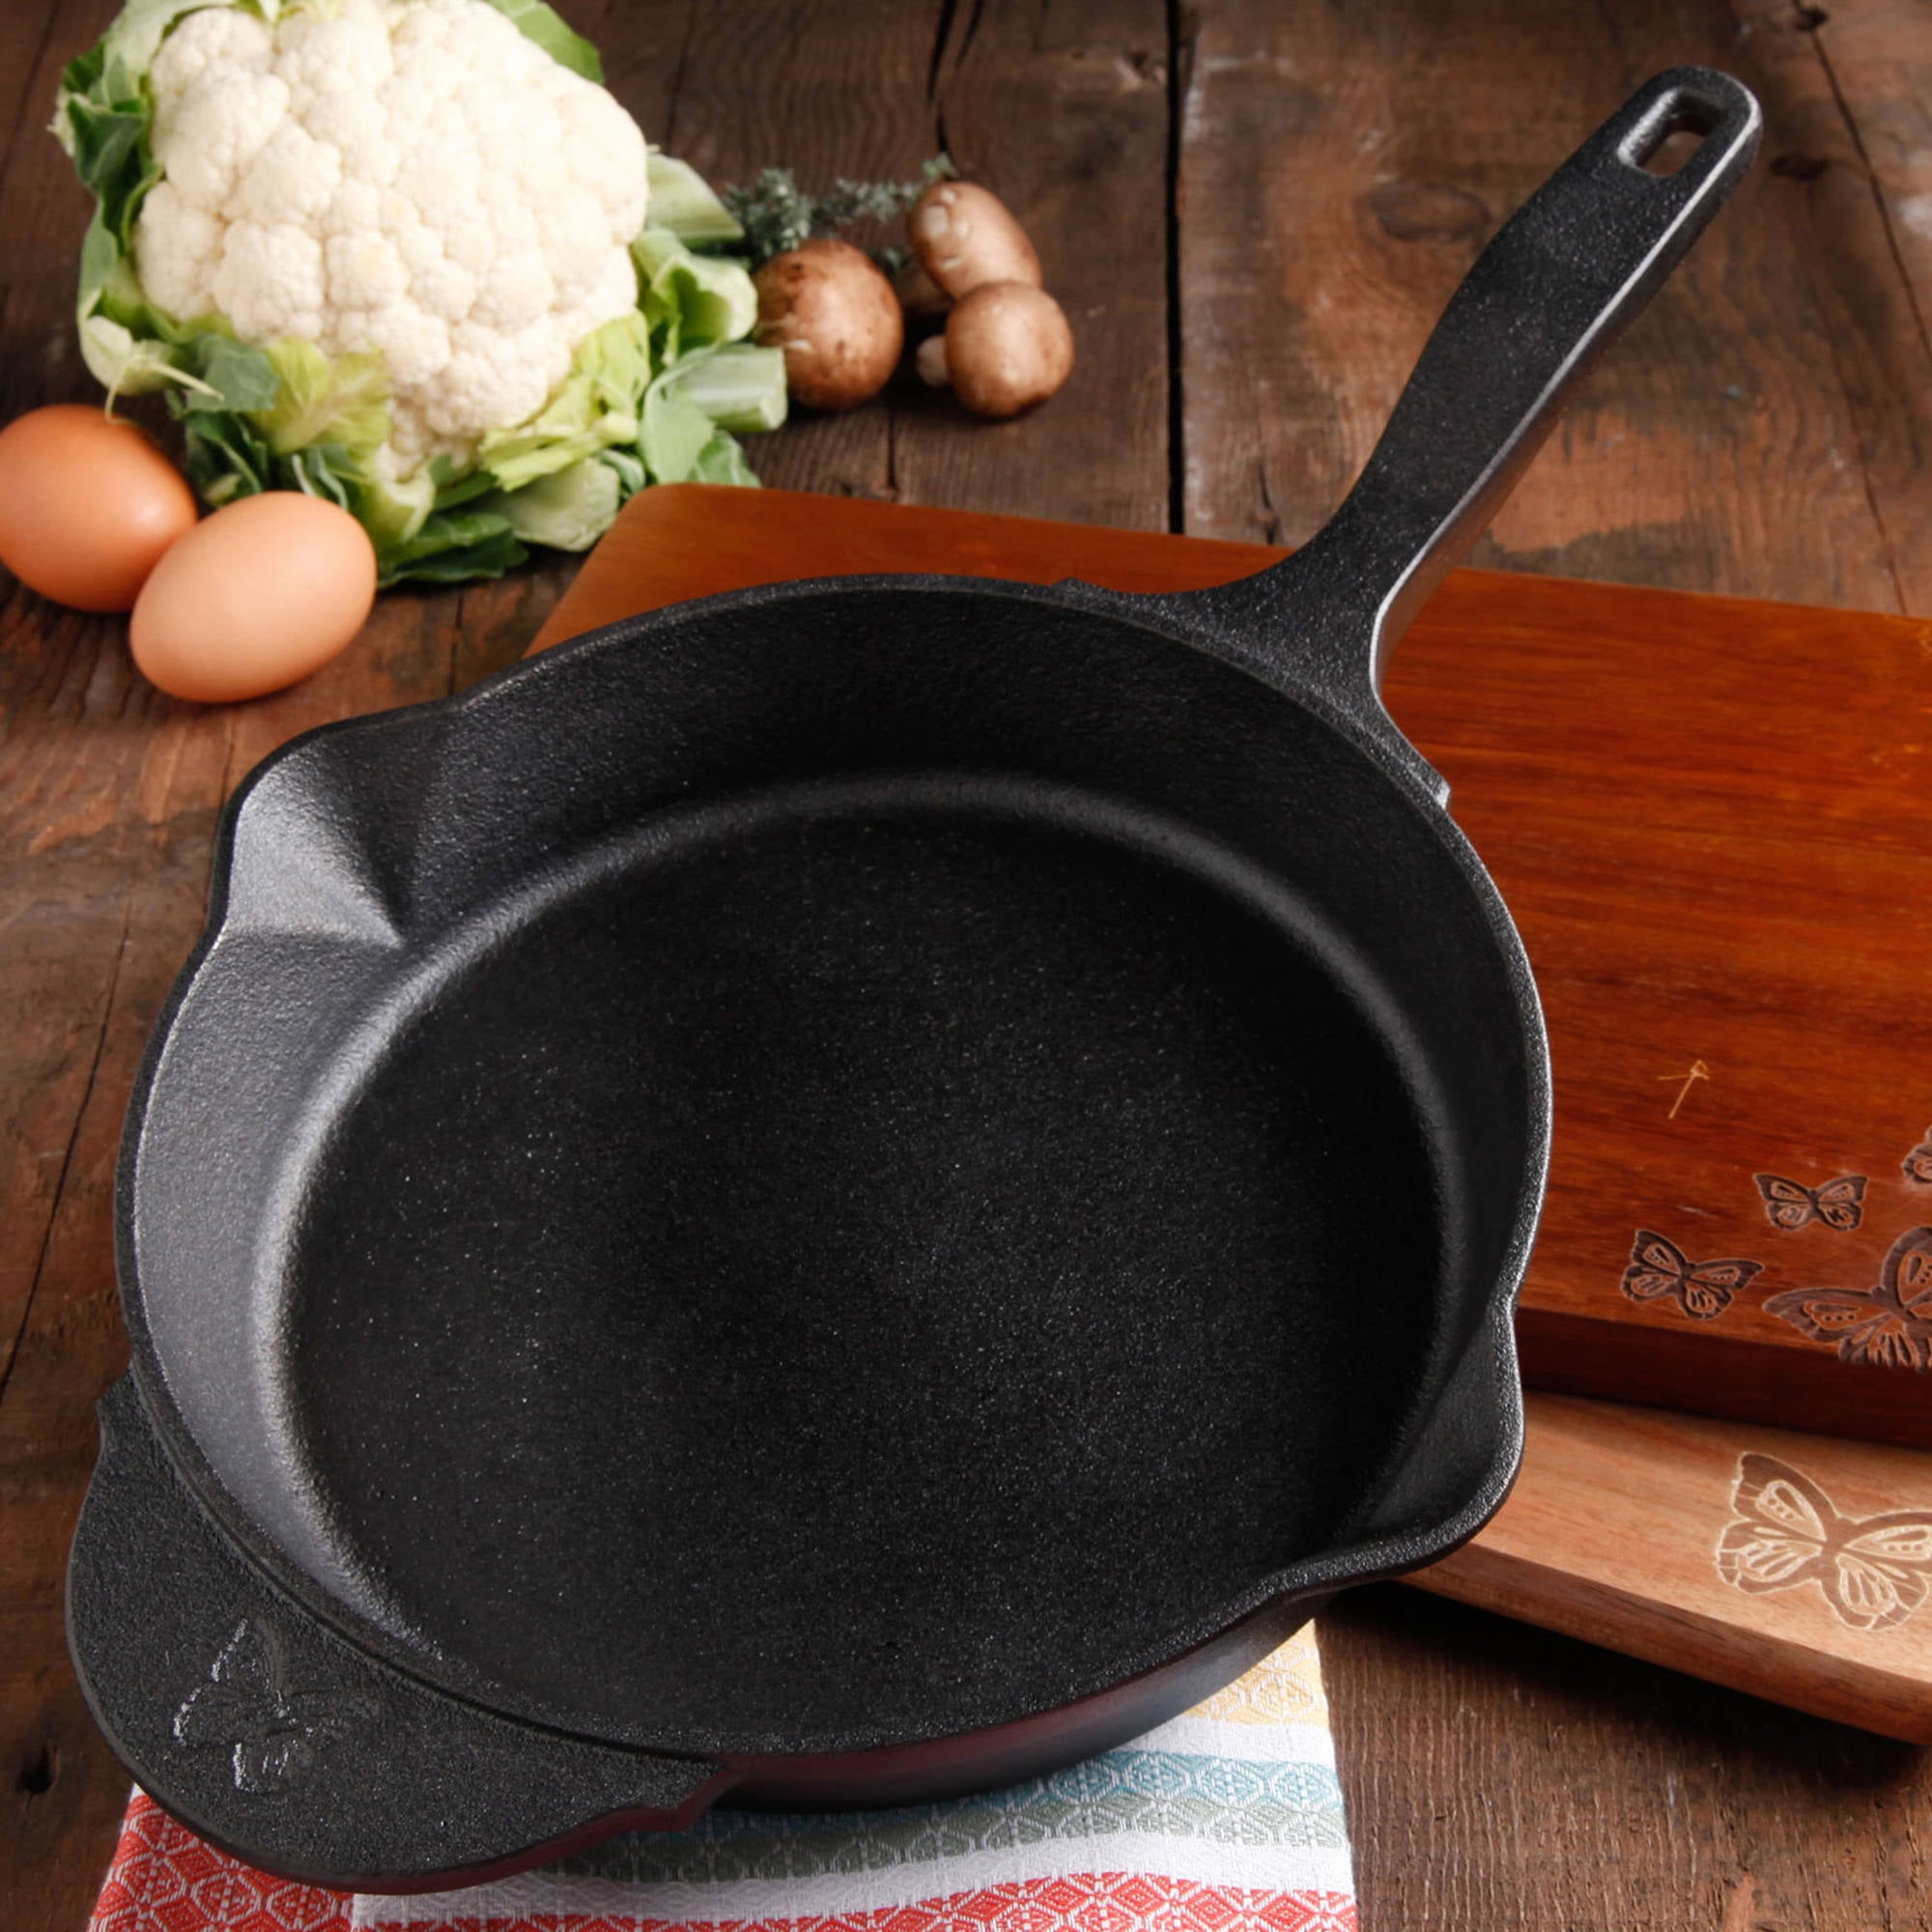 How do you season a cast iron frying pan?